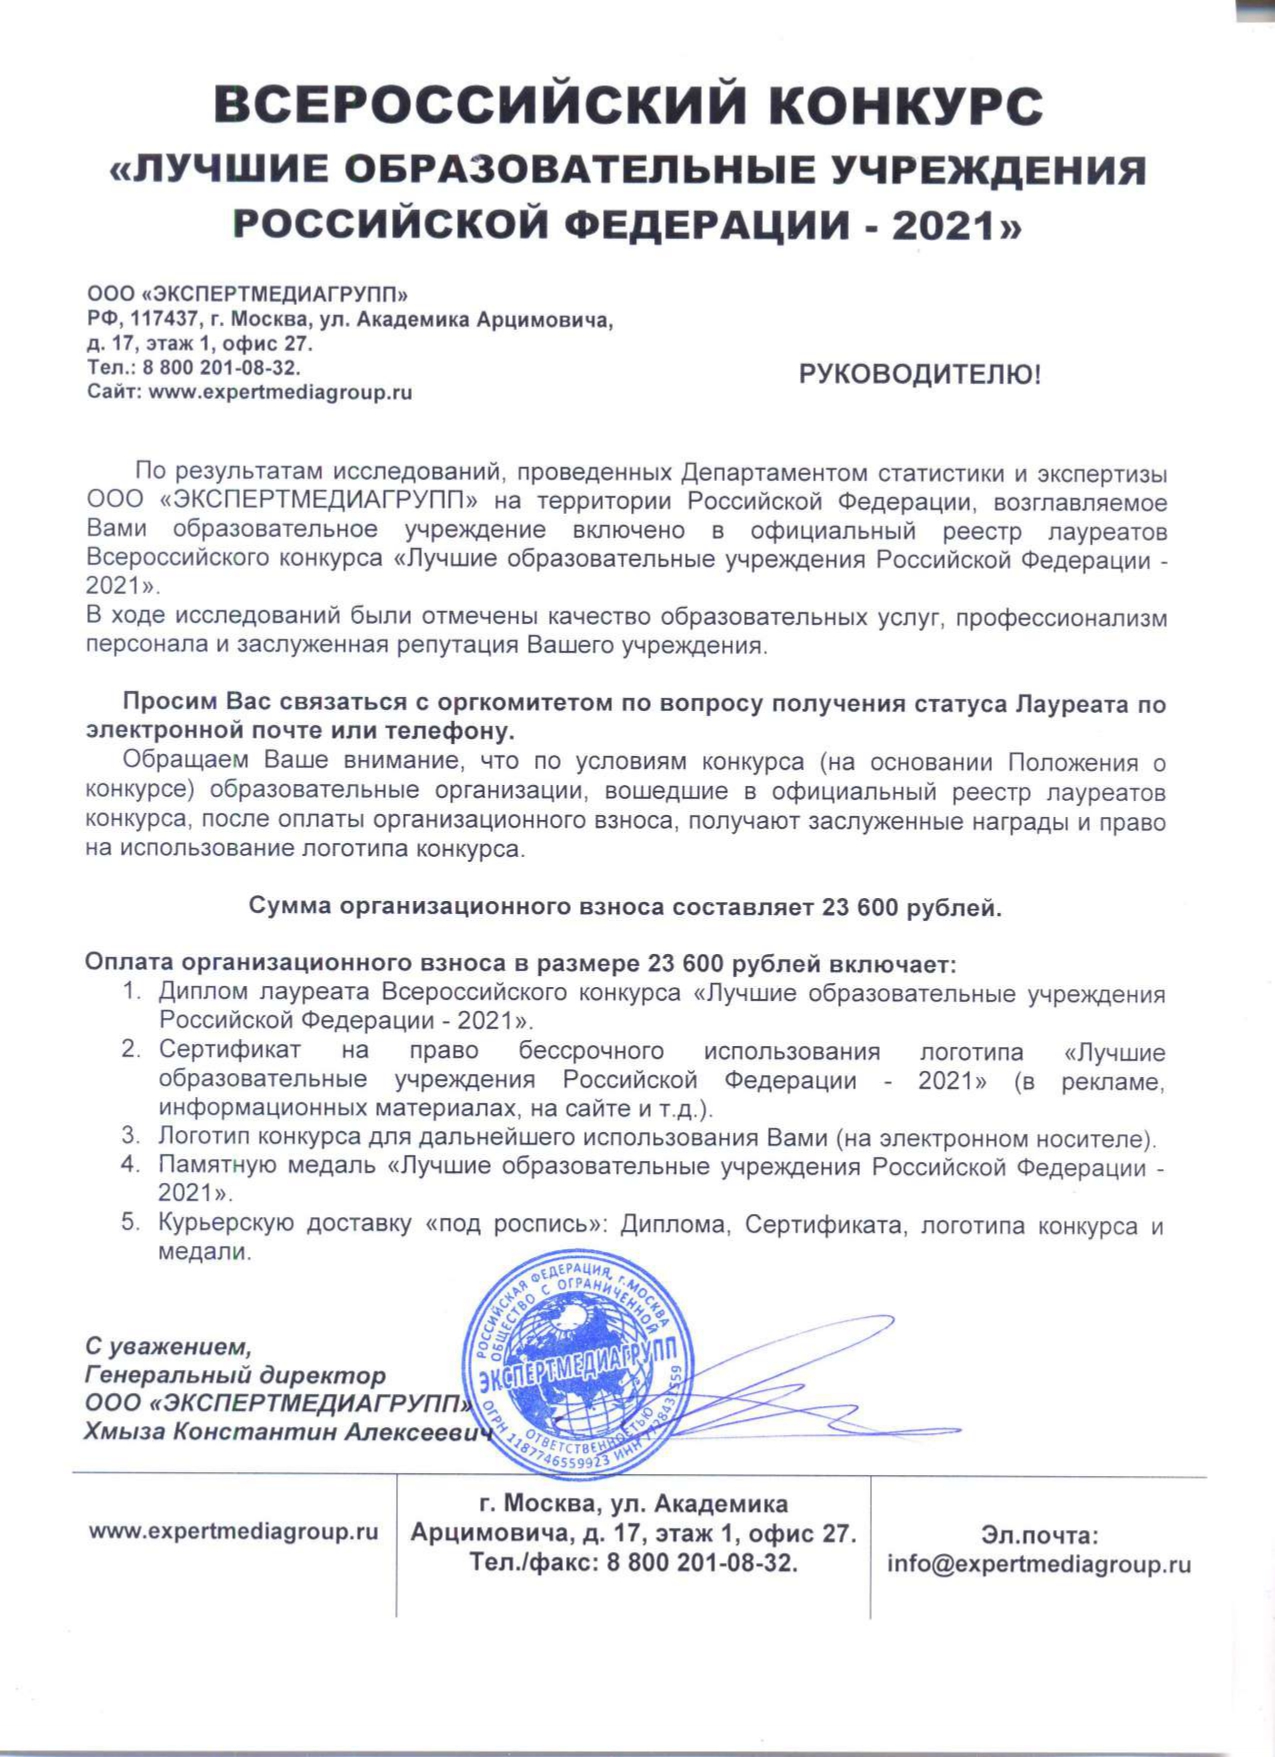 Официальное письмо Лучшие образовательные учреждения РФ 2021 page 0001